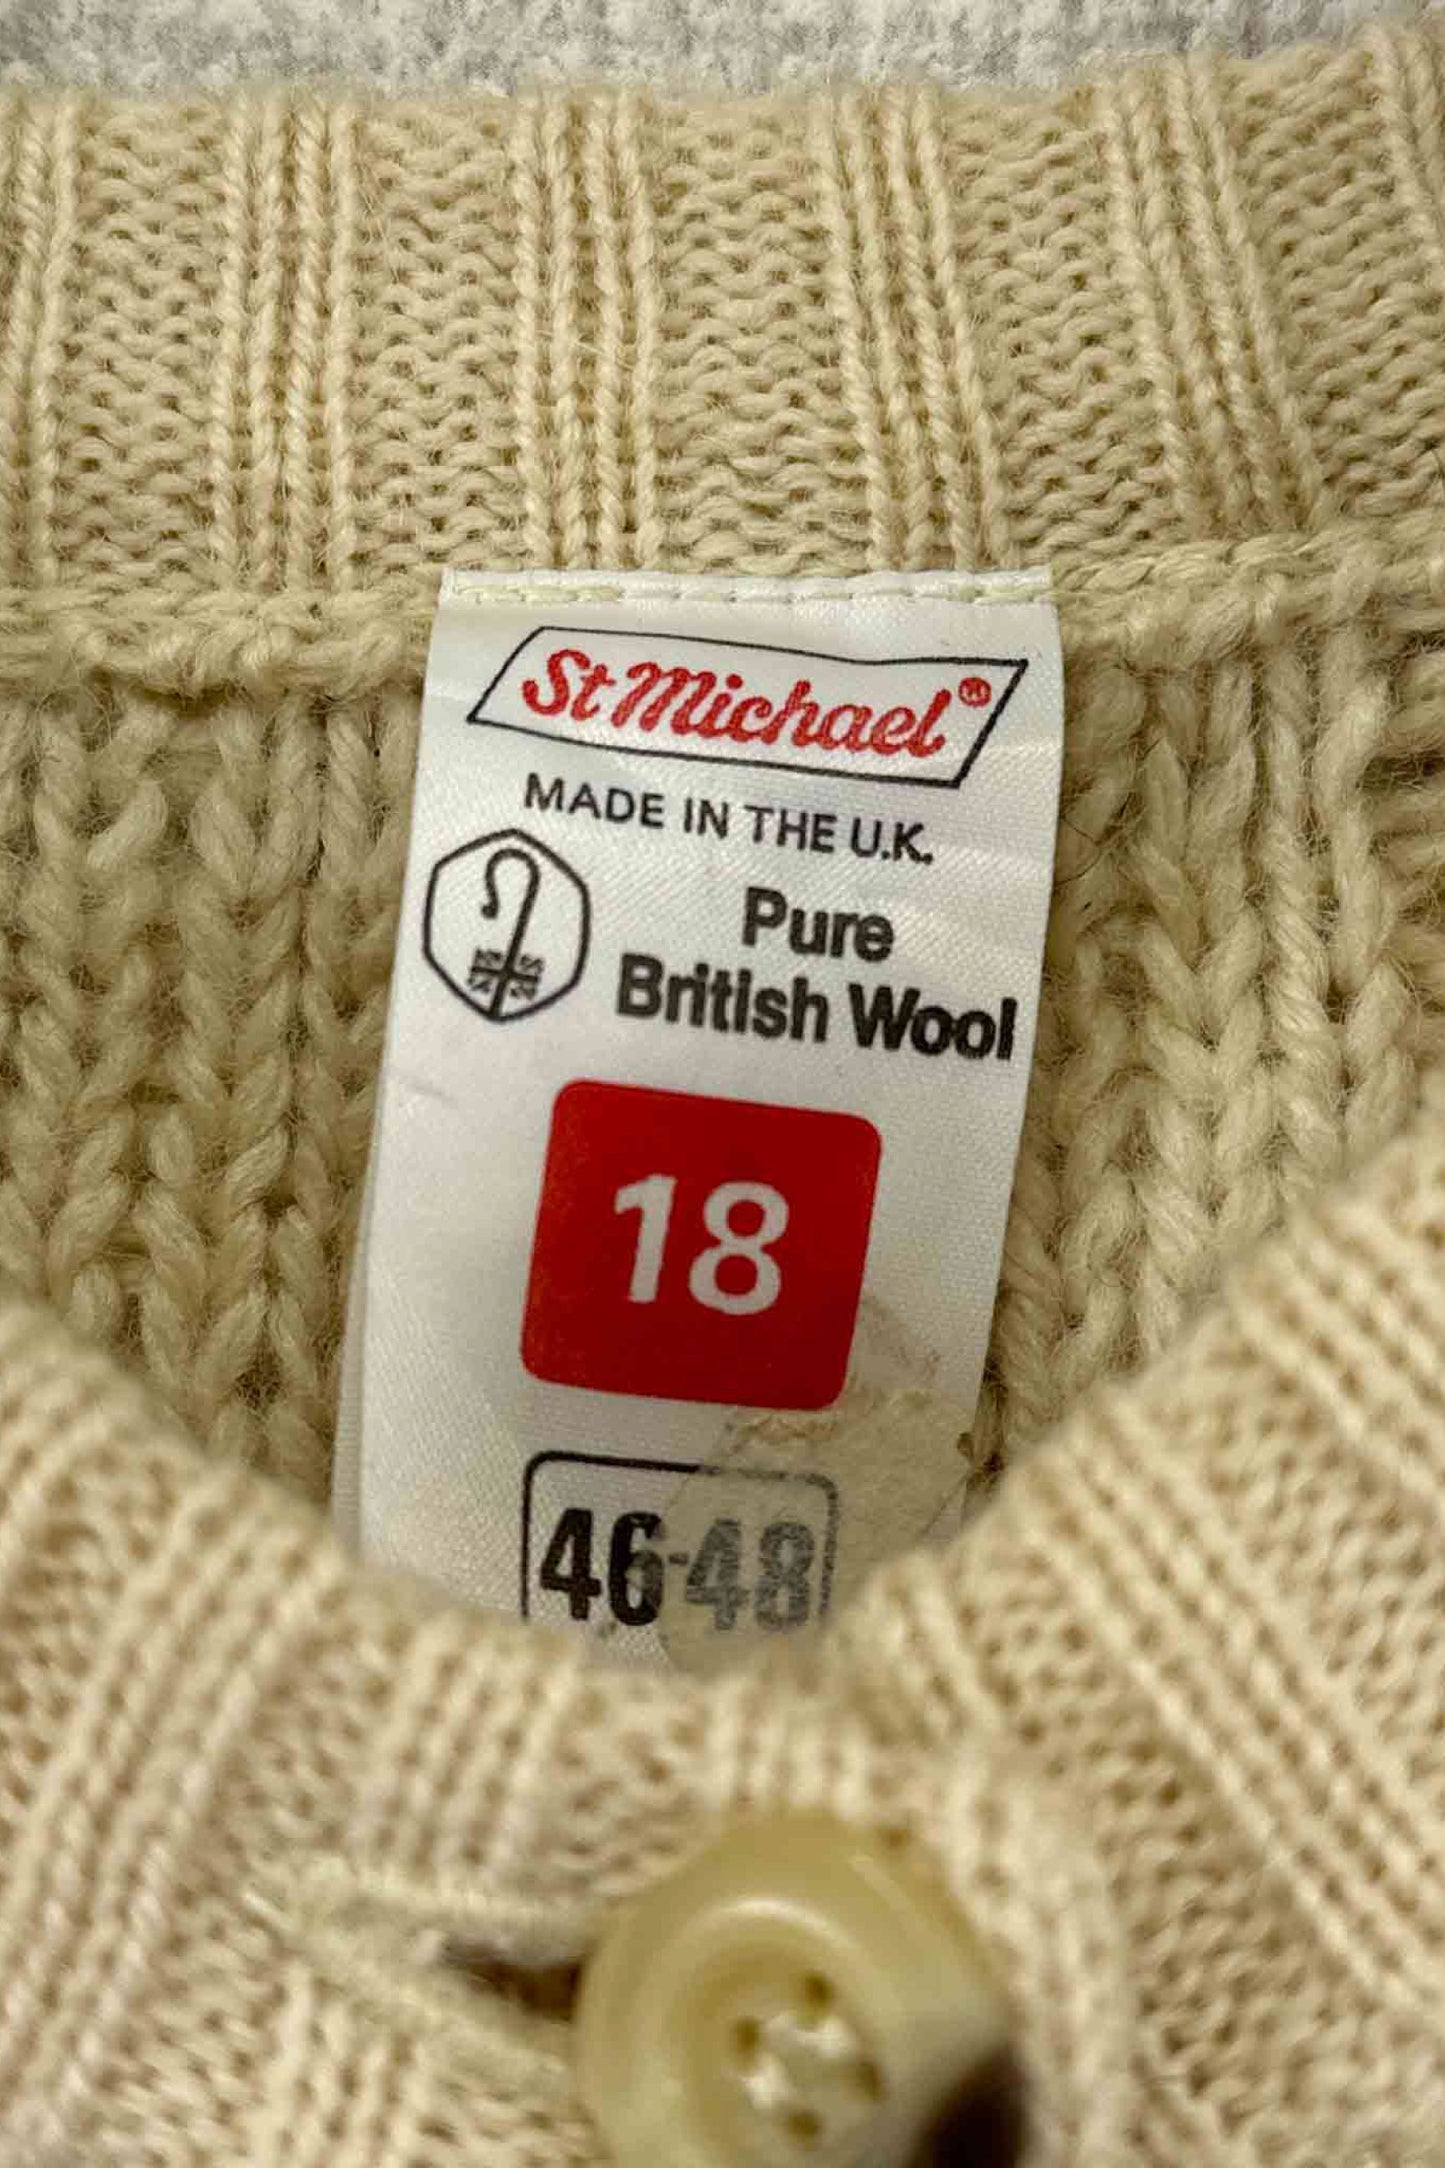 Made in THE U.K. st michael aran knit cardigan